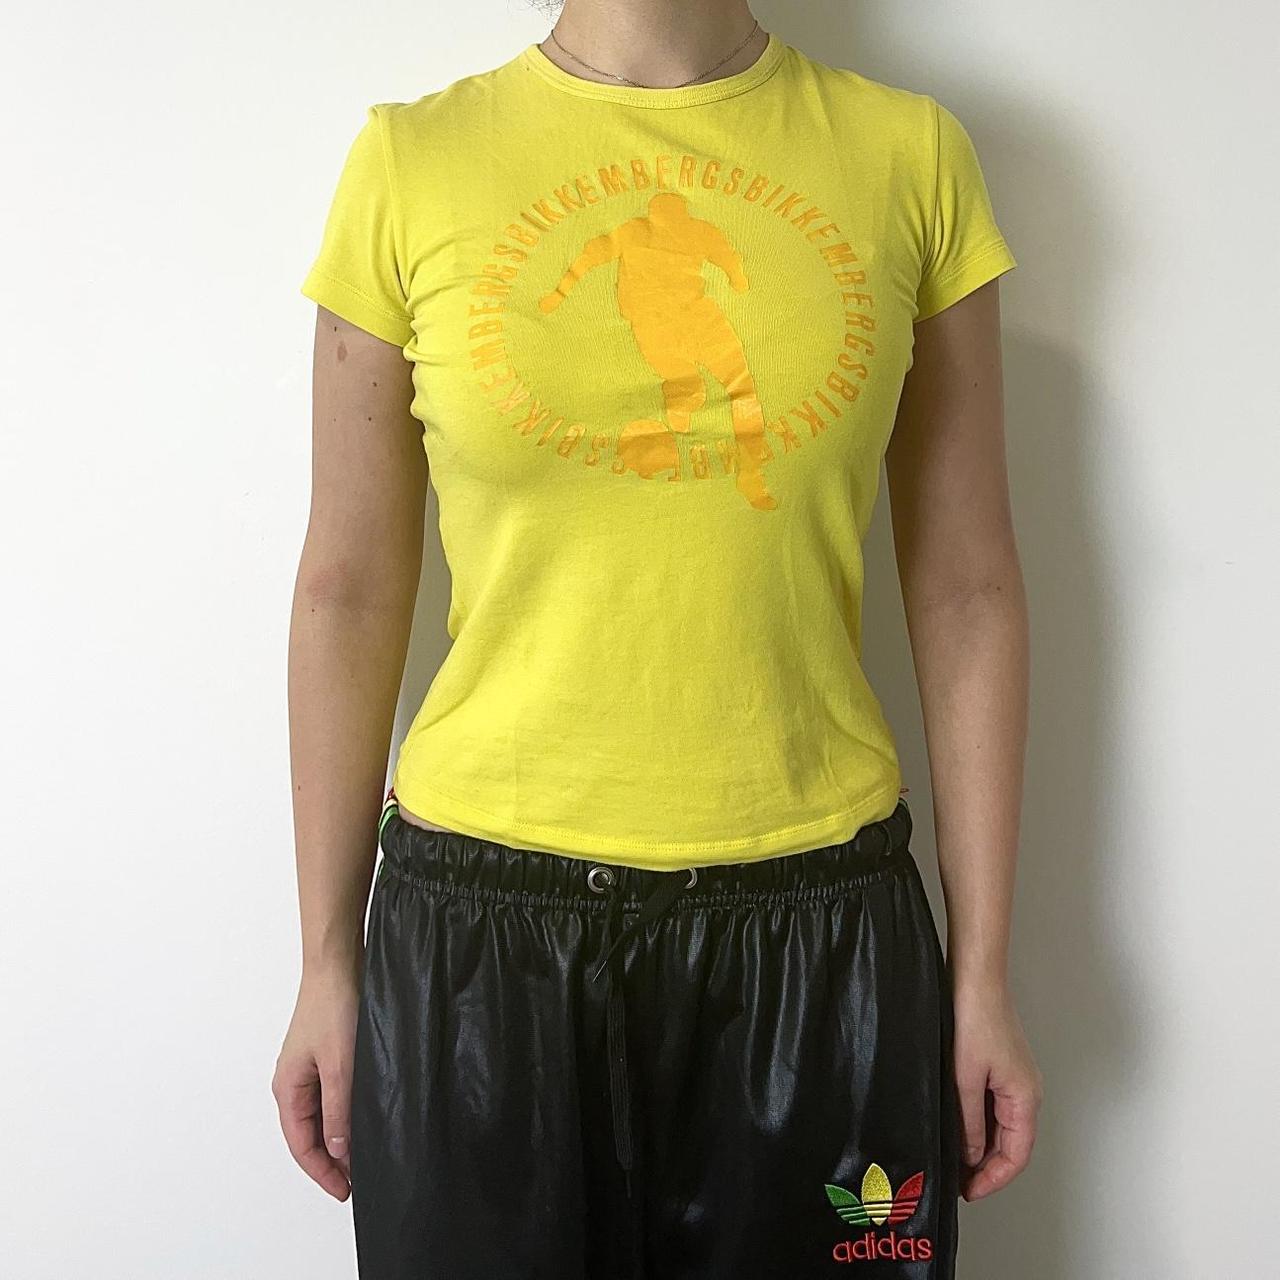 Bikkembergs Women's Yellow T-shirt (3)